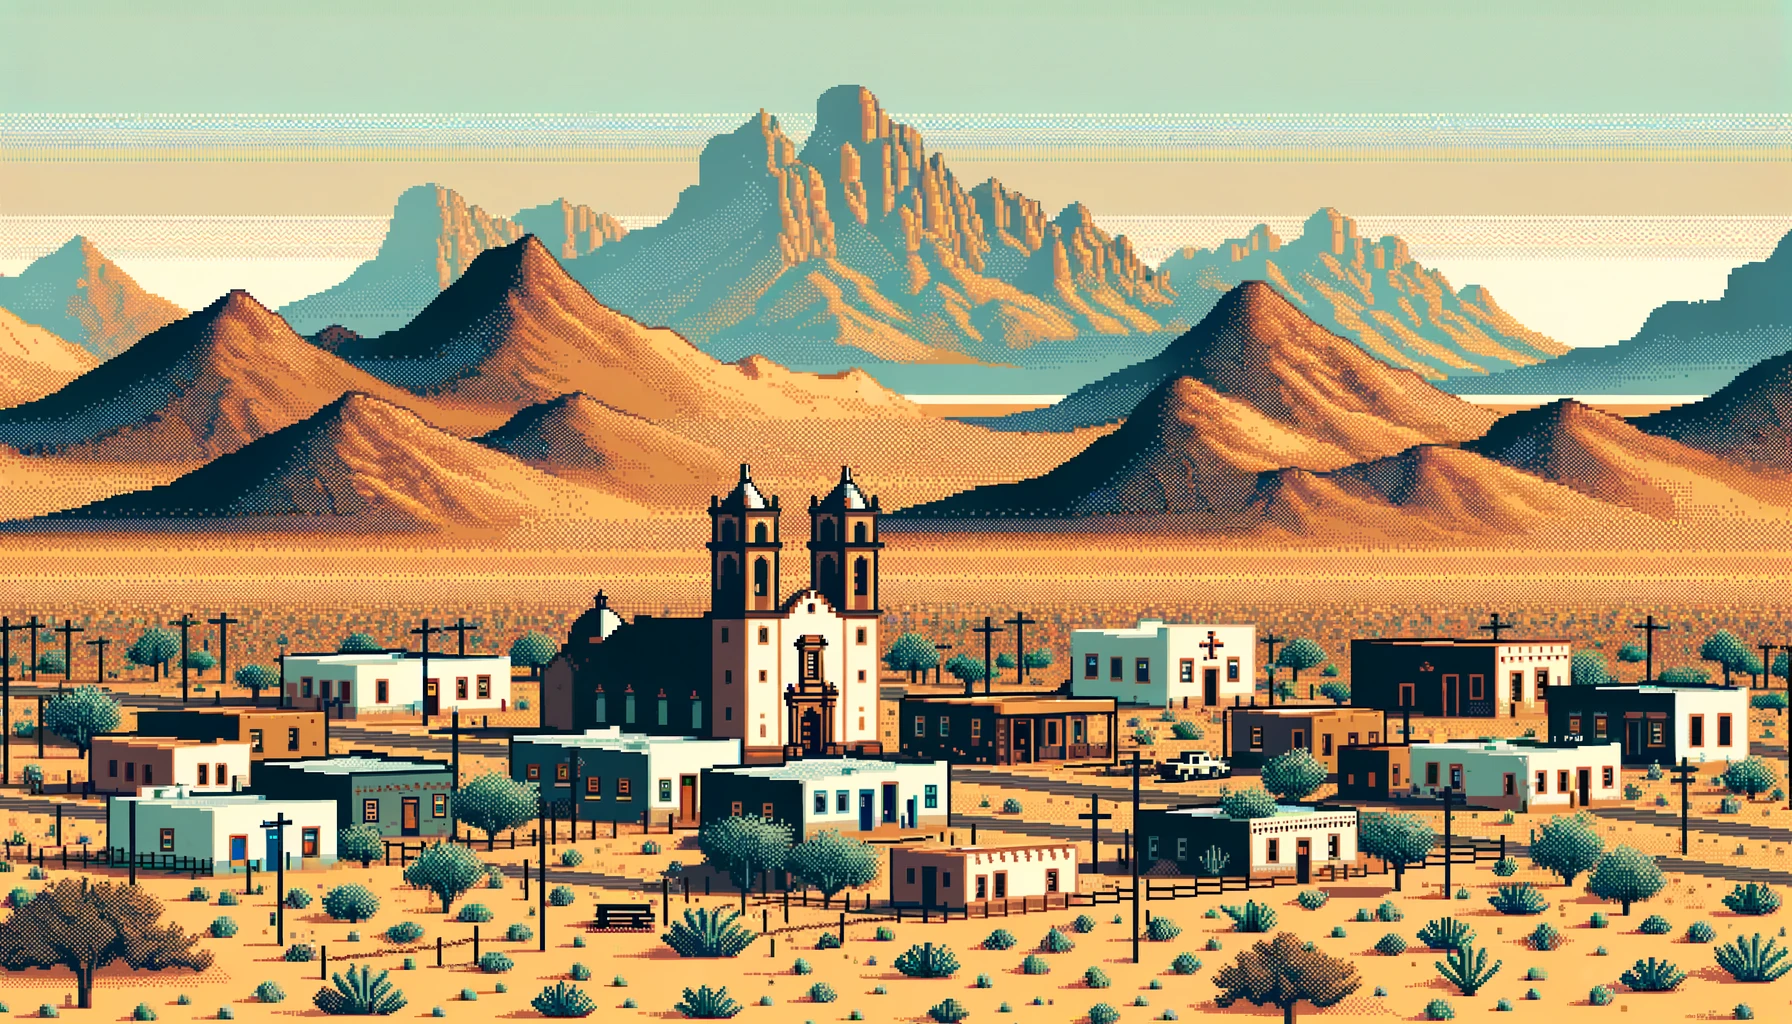 A mountain in a desert city.